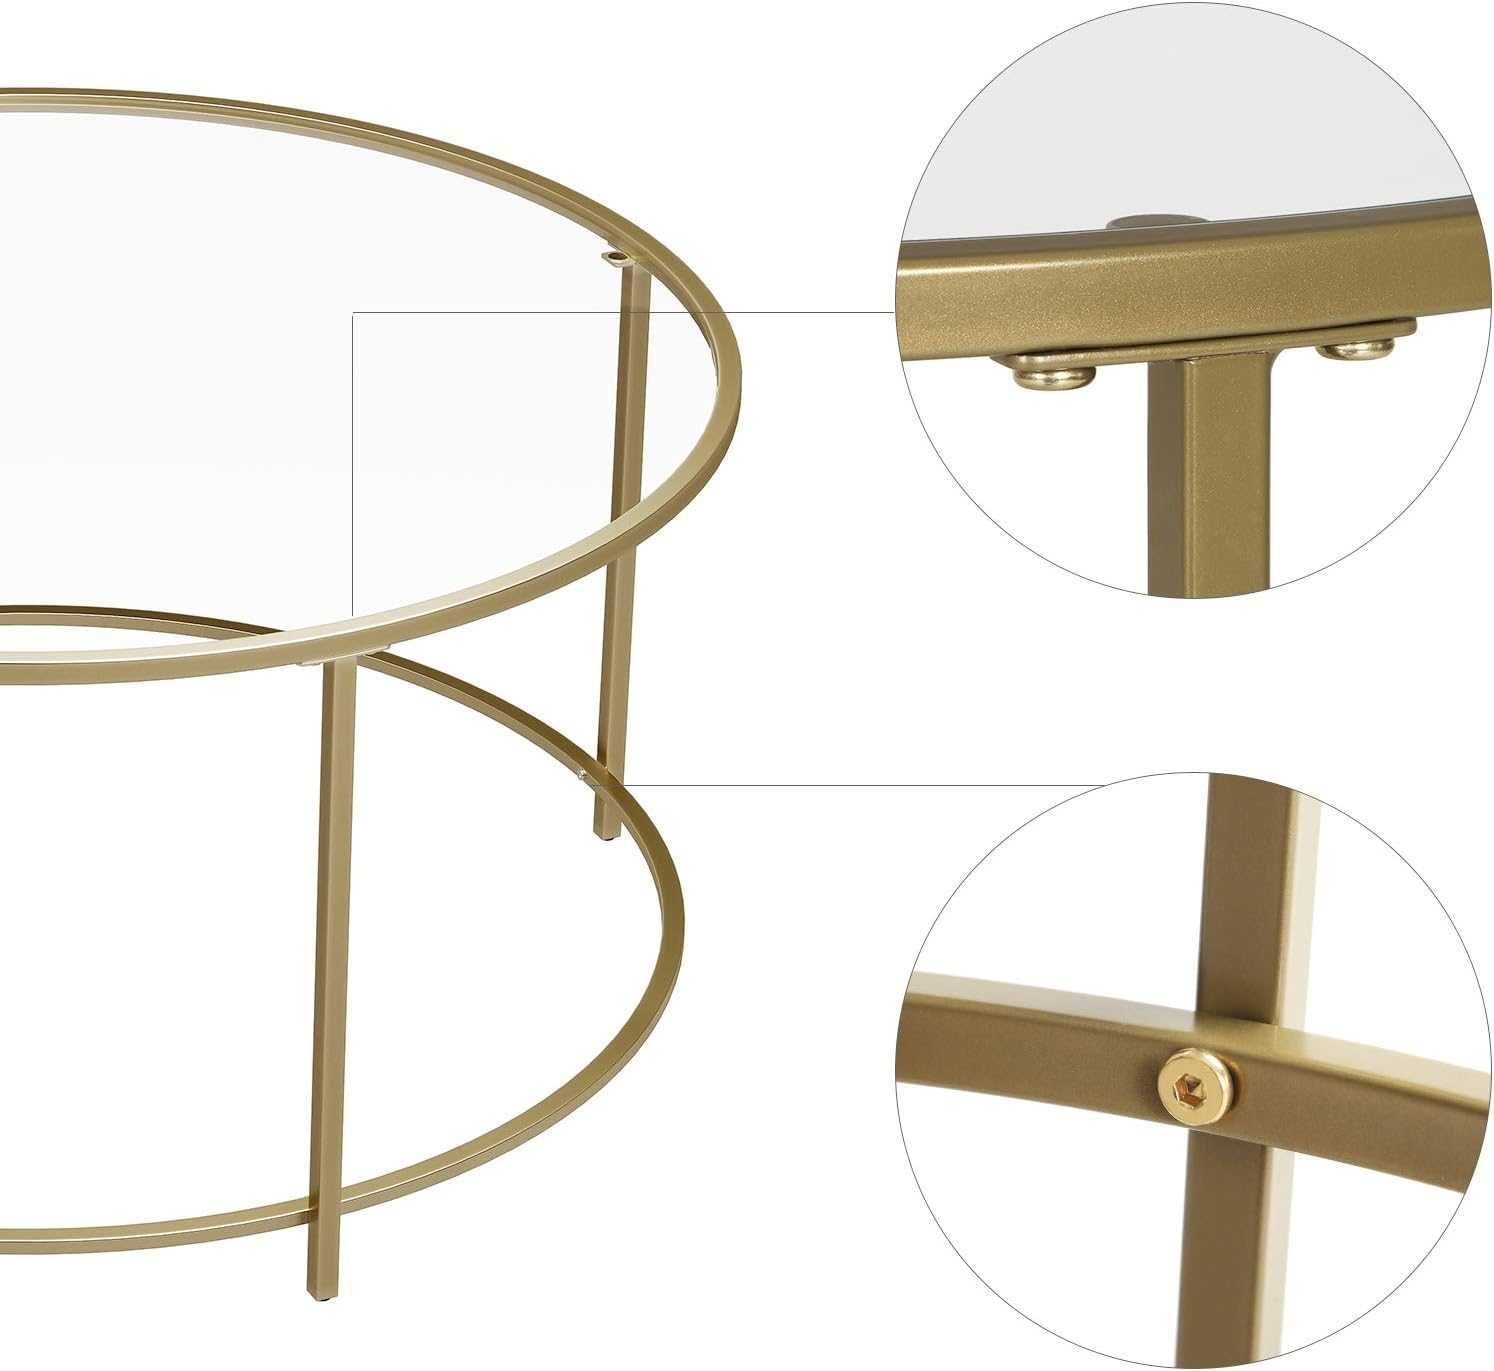 Stół okrągły szklany złoty Nowy salon Loft stolik kawowy nowoczesny